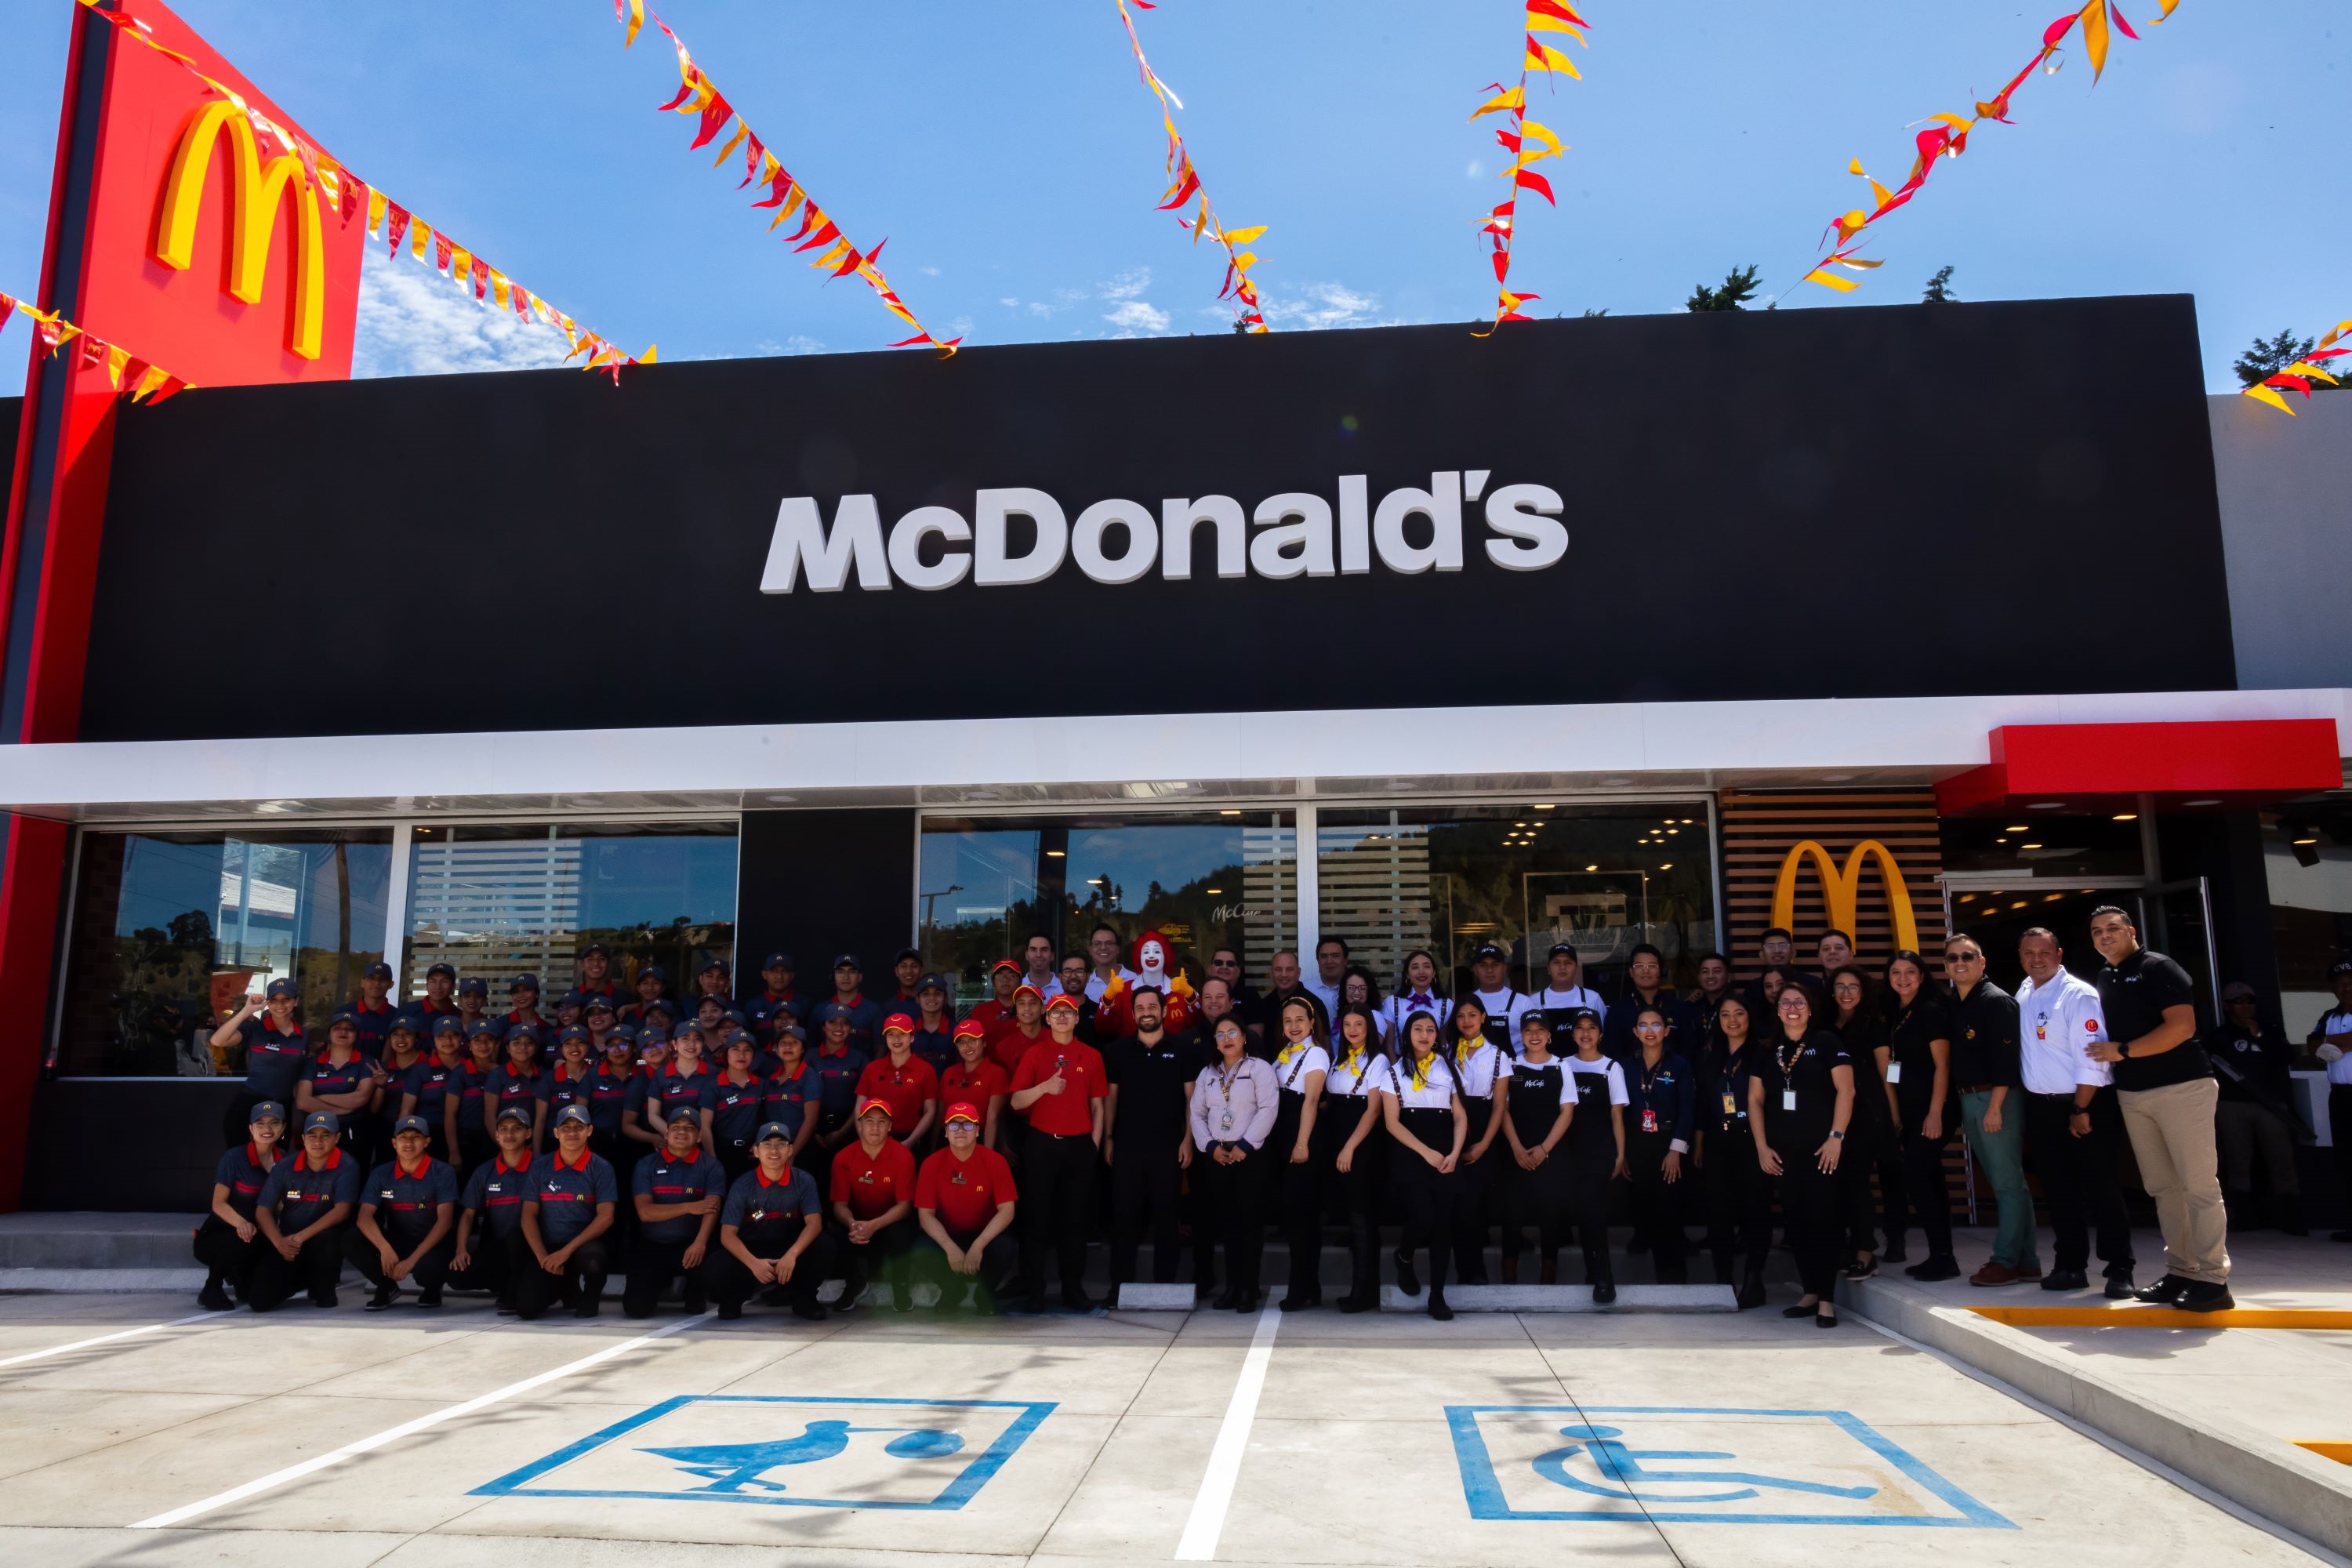 McDonald's continúa su expansión con la apertura de dos nuevos restaurantes